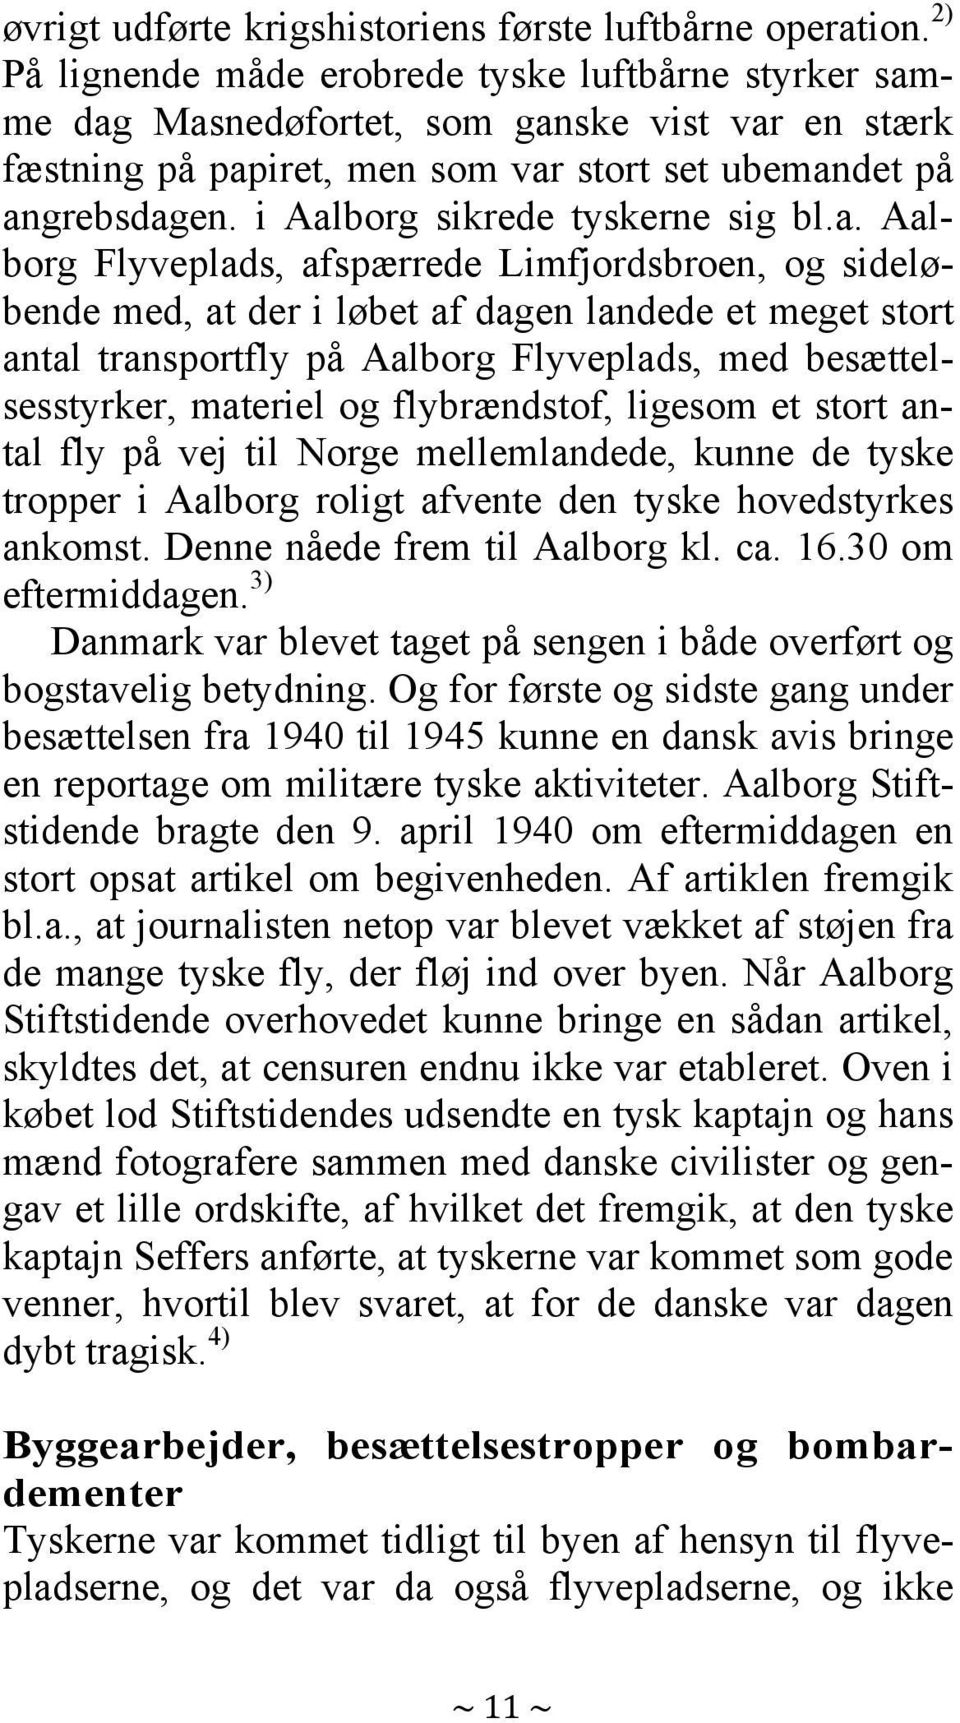 i Aalborg sikrede tyskerne sig bl.a. Aalborg Flyveplads, afspærrede Limfjordsbroen, og sideløbende med, at der i løbet af dagen landede et meget stort antal transportfly på Aalborg Flyveplads, med